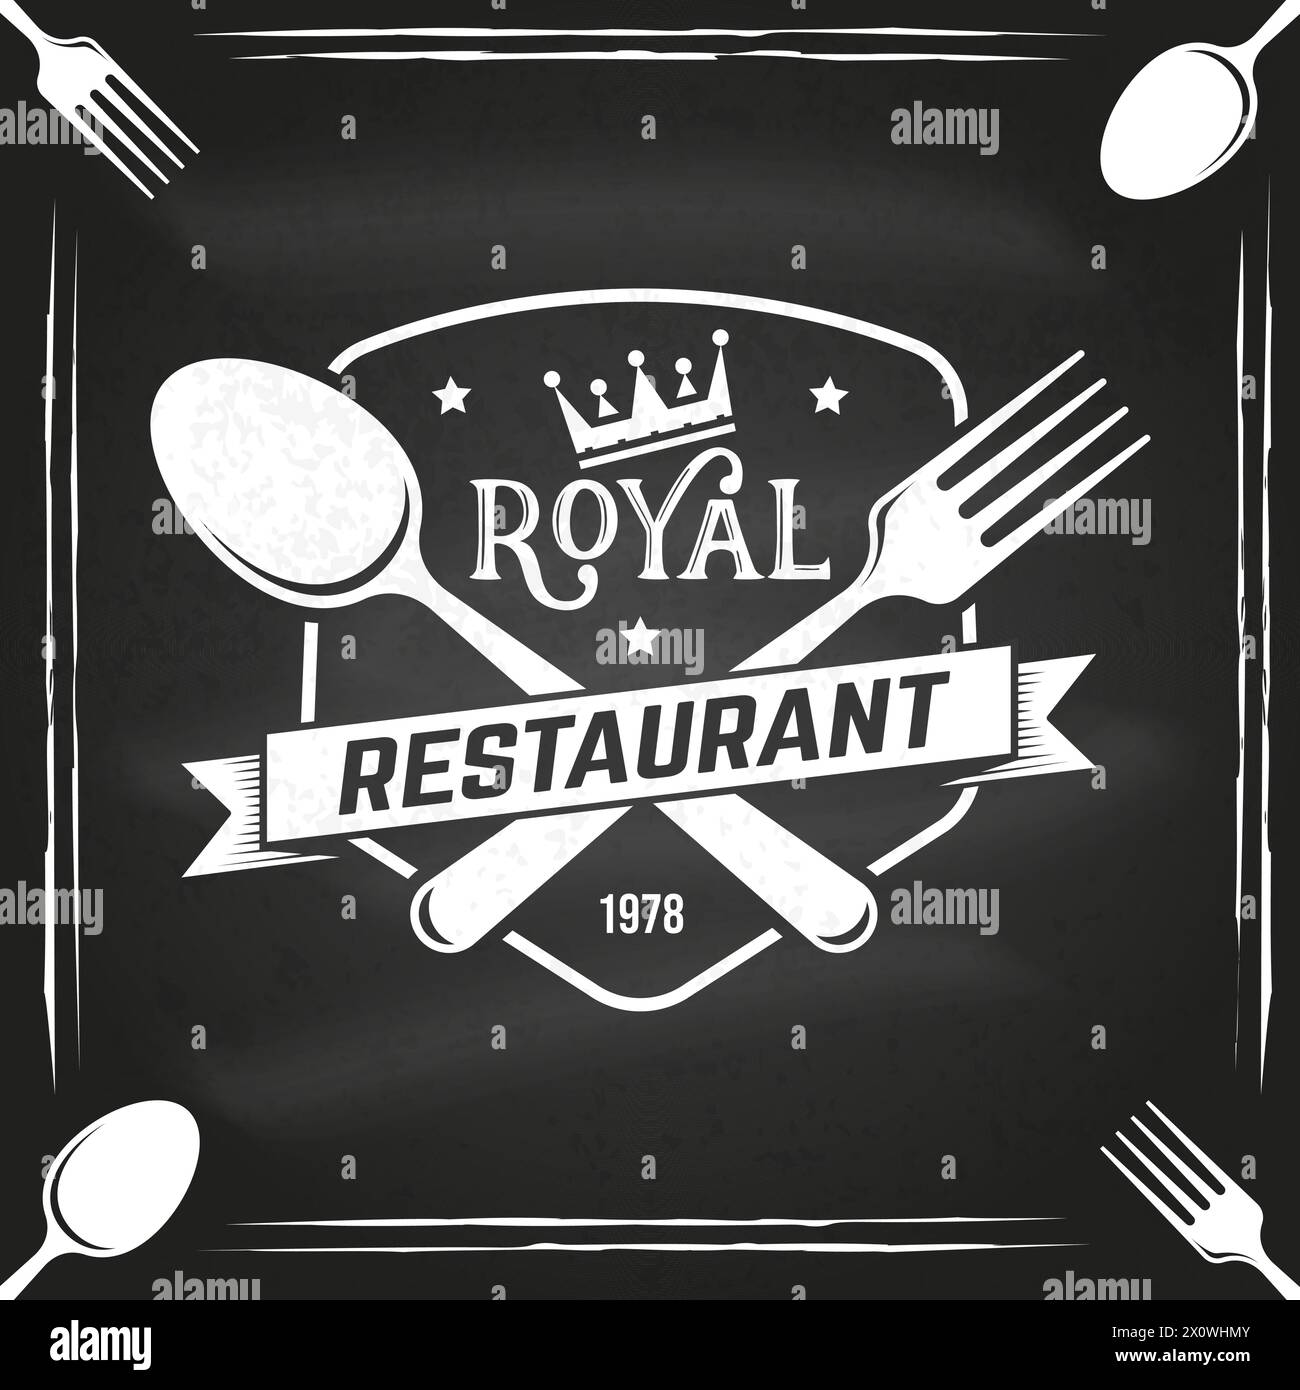 Royal Restaurant Shop, Menü auf der Tafel. Vektorabbildung. Vintage-Grafik für Logo, Label, Abzeichen mit Krone, Gabel und Löffel Stock Vektor